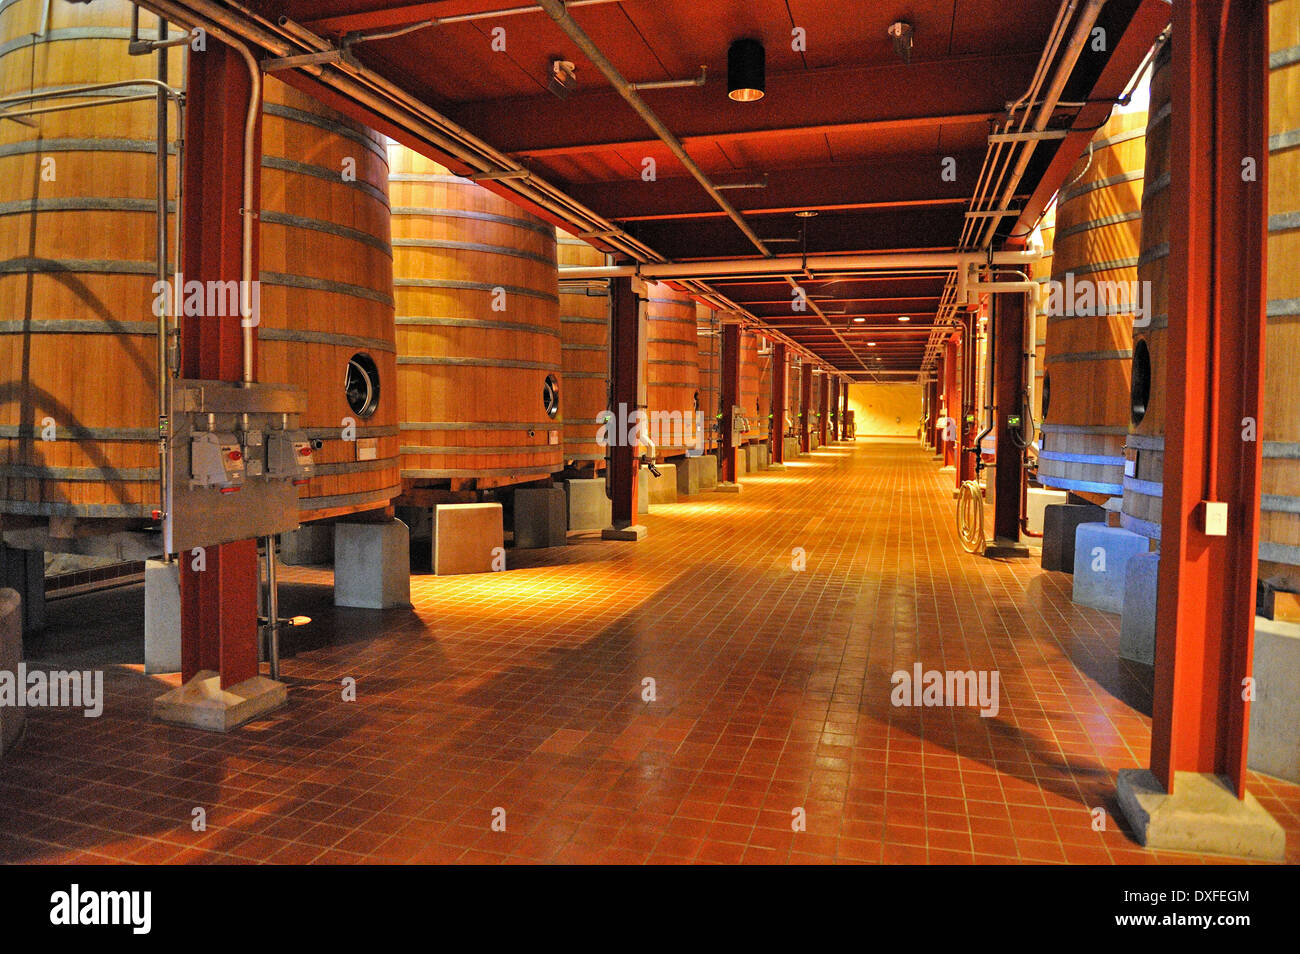 Fermentazione in legno di quercia di barili, Robert Mondavi Winery, Napa Valley, California, Stati Uniti d'America Foto Stock